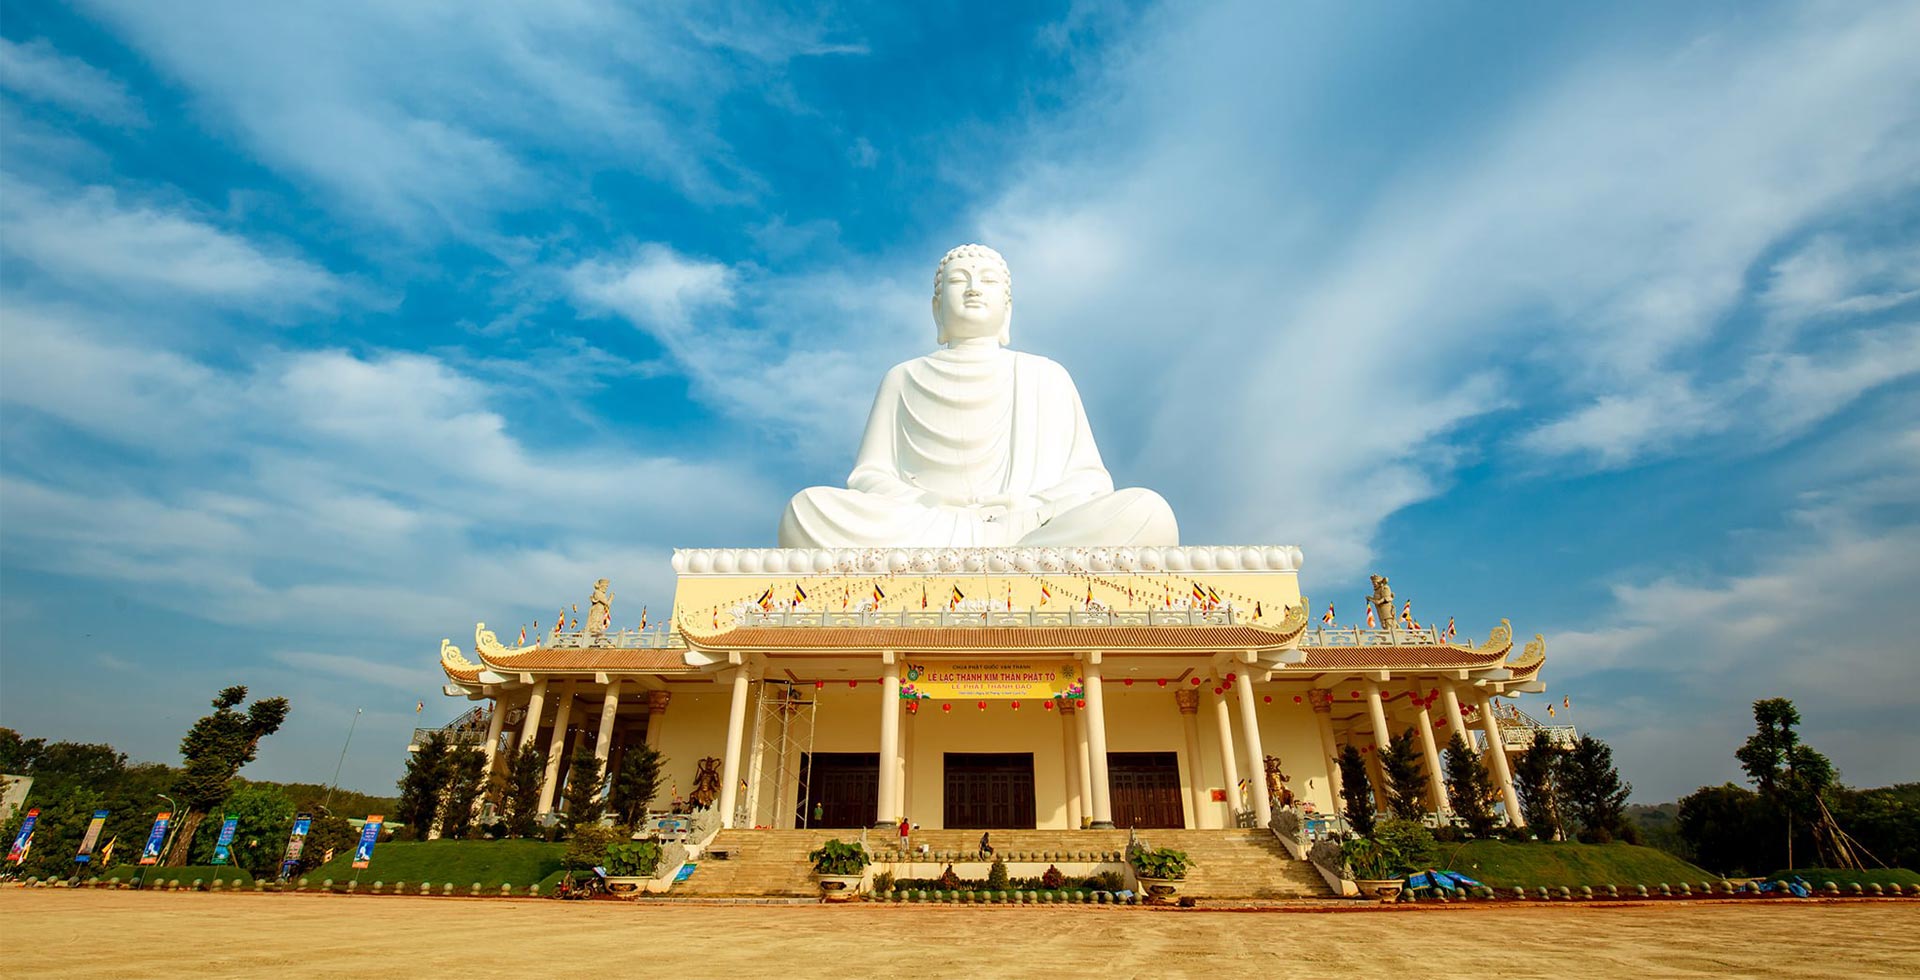 Kỷ lục Tượng Phật ngồi mới tại Đông Nam Á